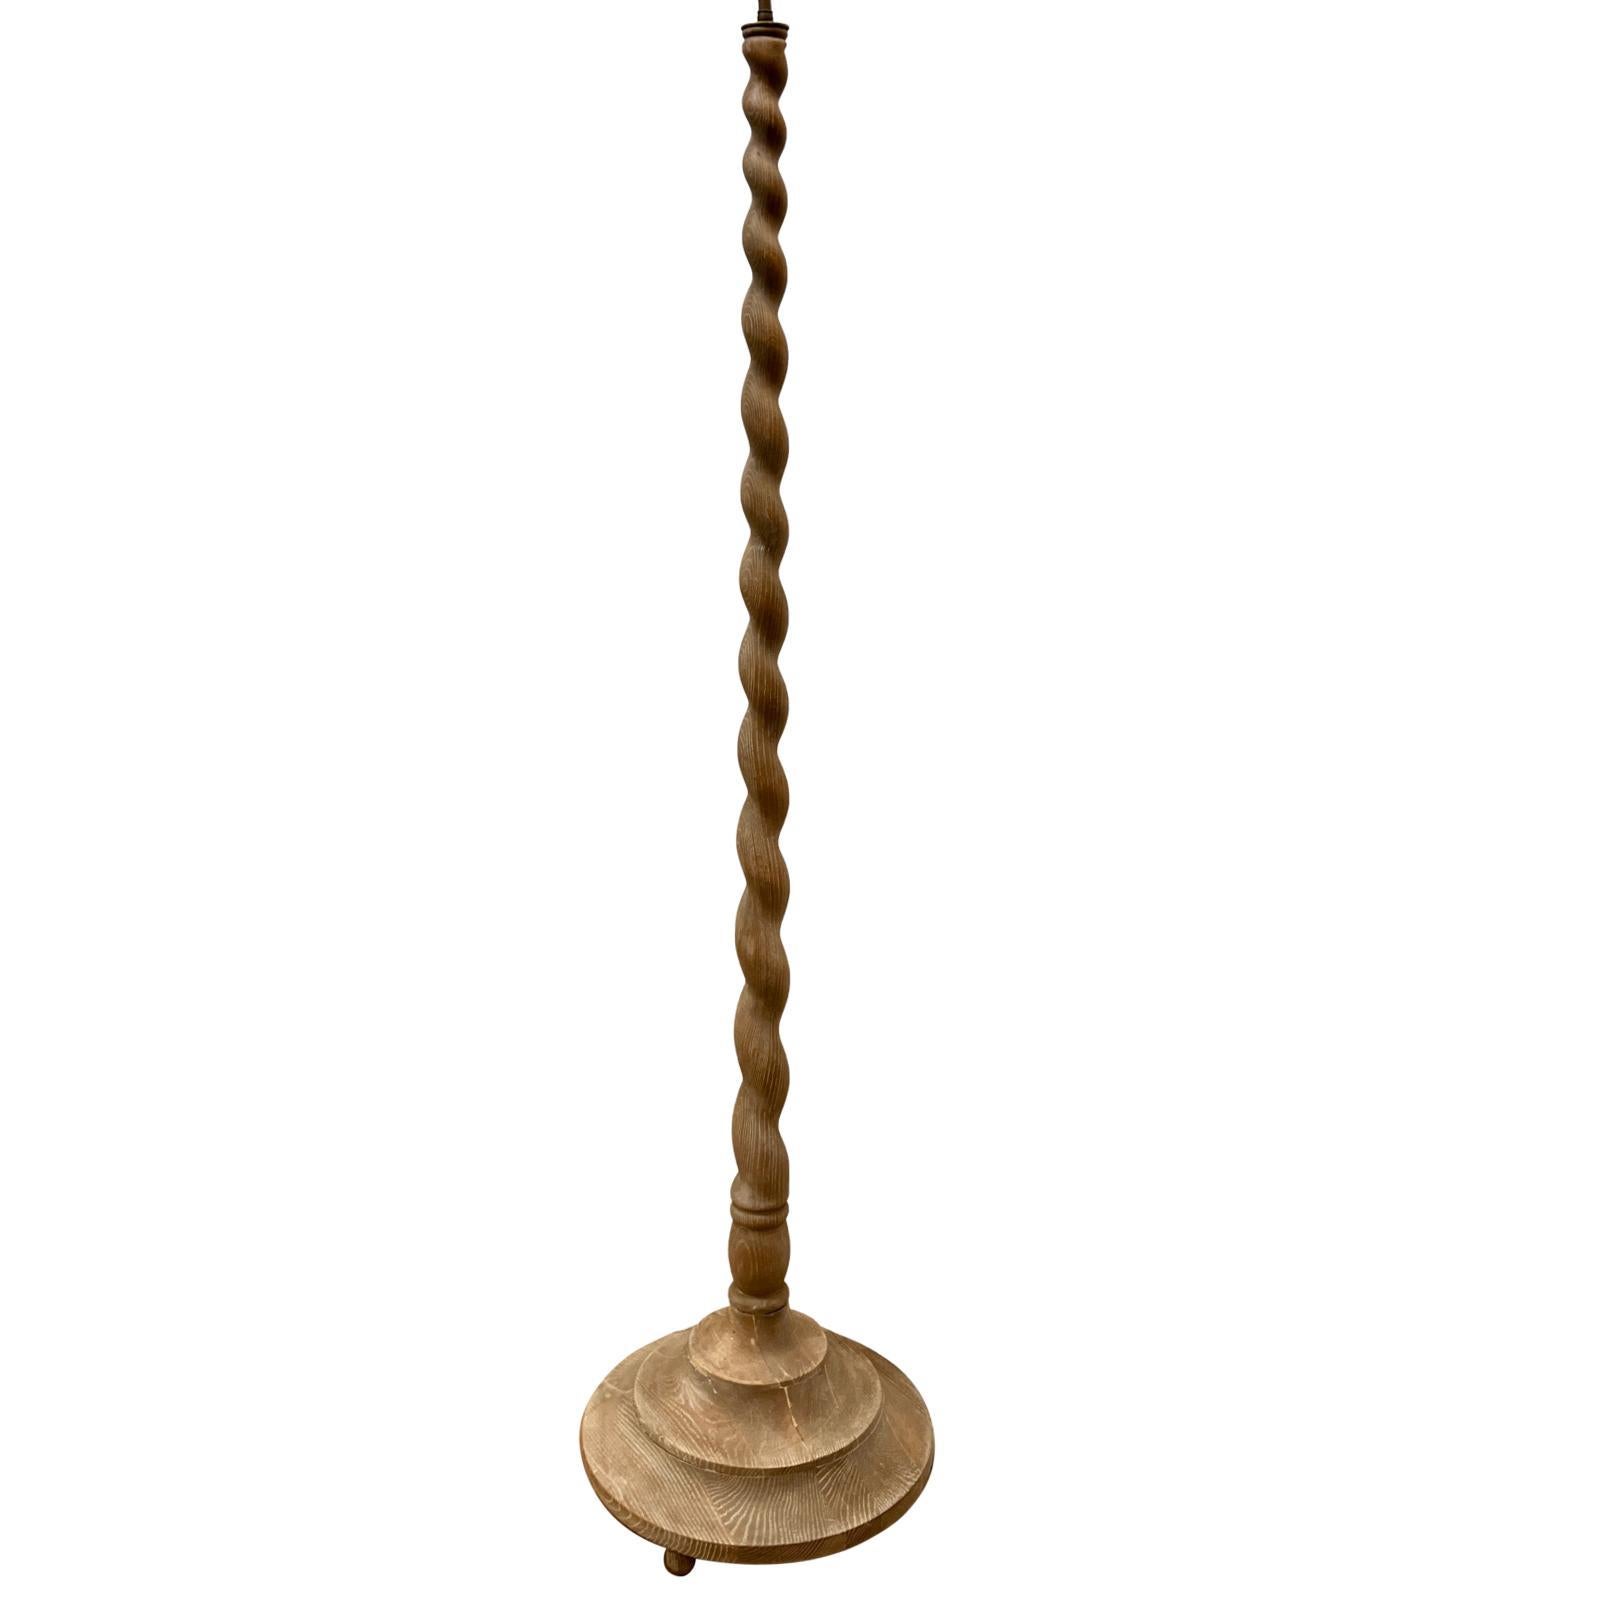 Eine französische Stehlampe aus keramischem Holz aus den 1940er Jahren.

Abmessungen:
Höhe des Körpers: 61,5